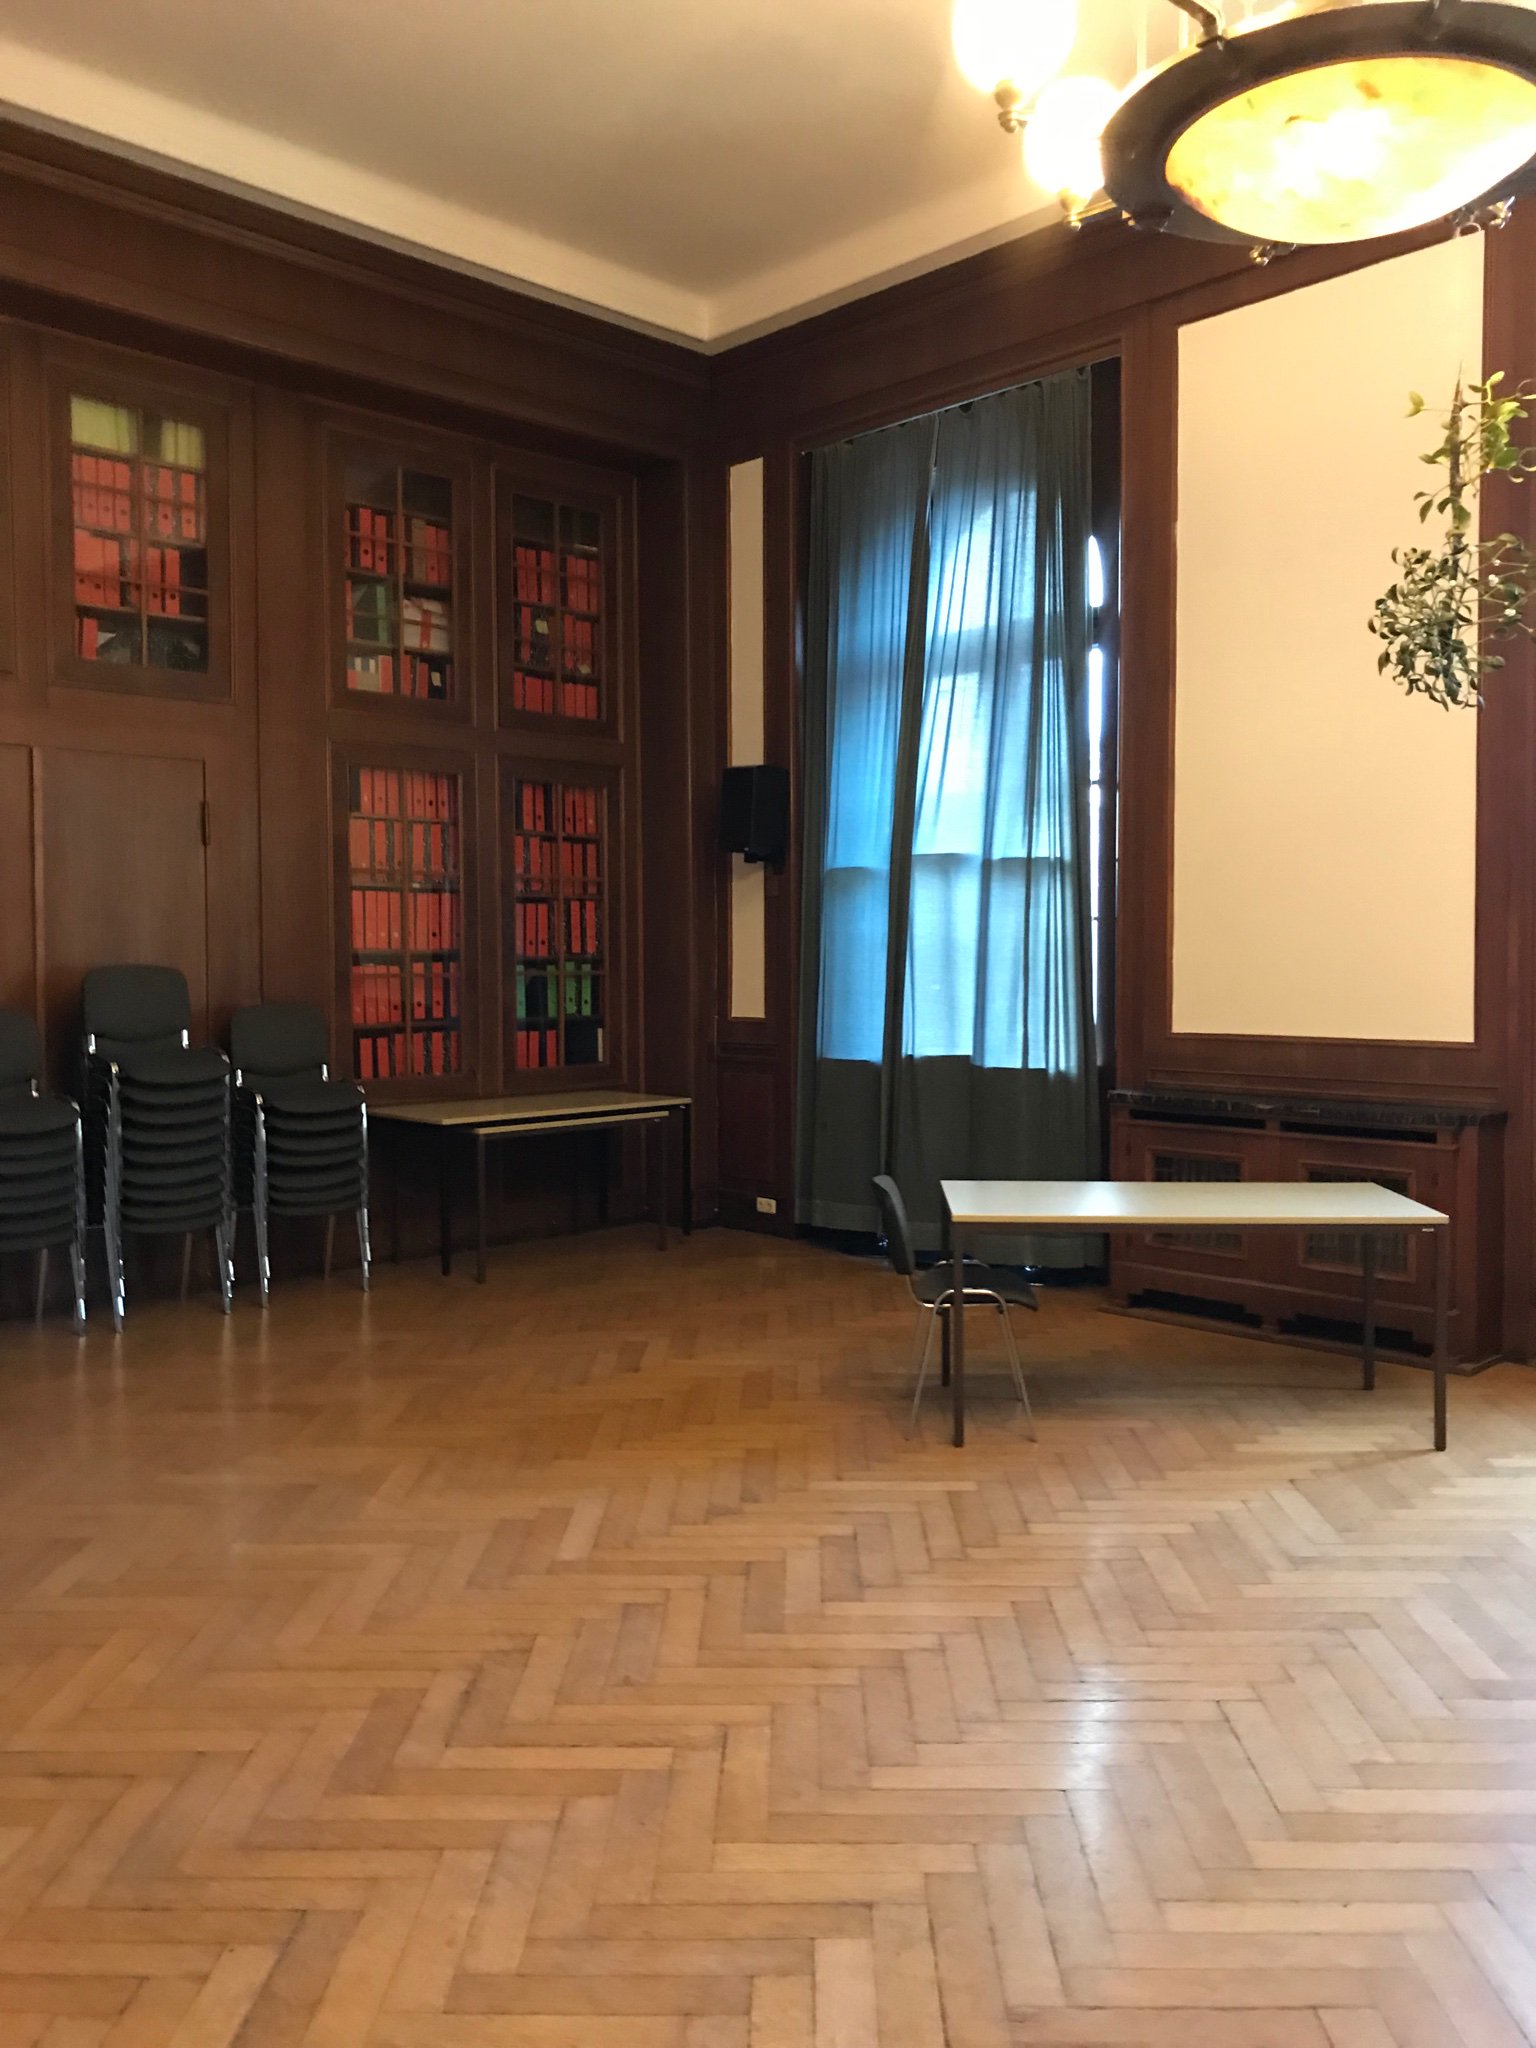 ヒロマル ヒトラー野望の地図帳発売中 な なんと 1938年のミュンヘン会談の部屋に入ることができました この建物 旧総統官邸 は現在音楽大学で部外者は入れないですが 特別に中に入れてもらい 会談の部屋も鍵を開けて見せていただきました まさかの